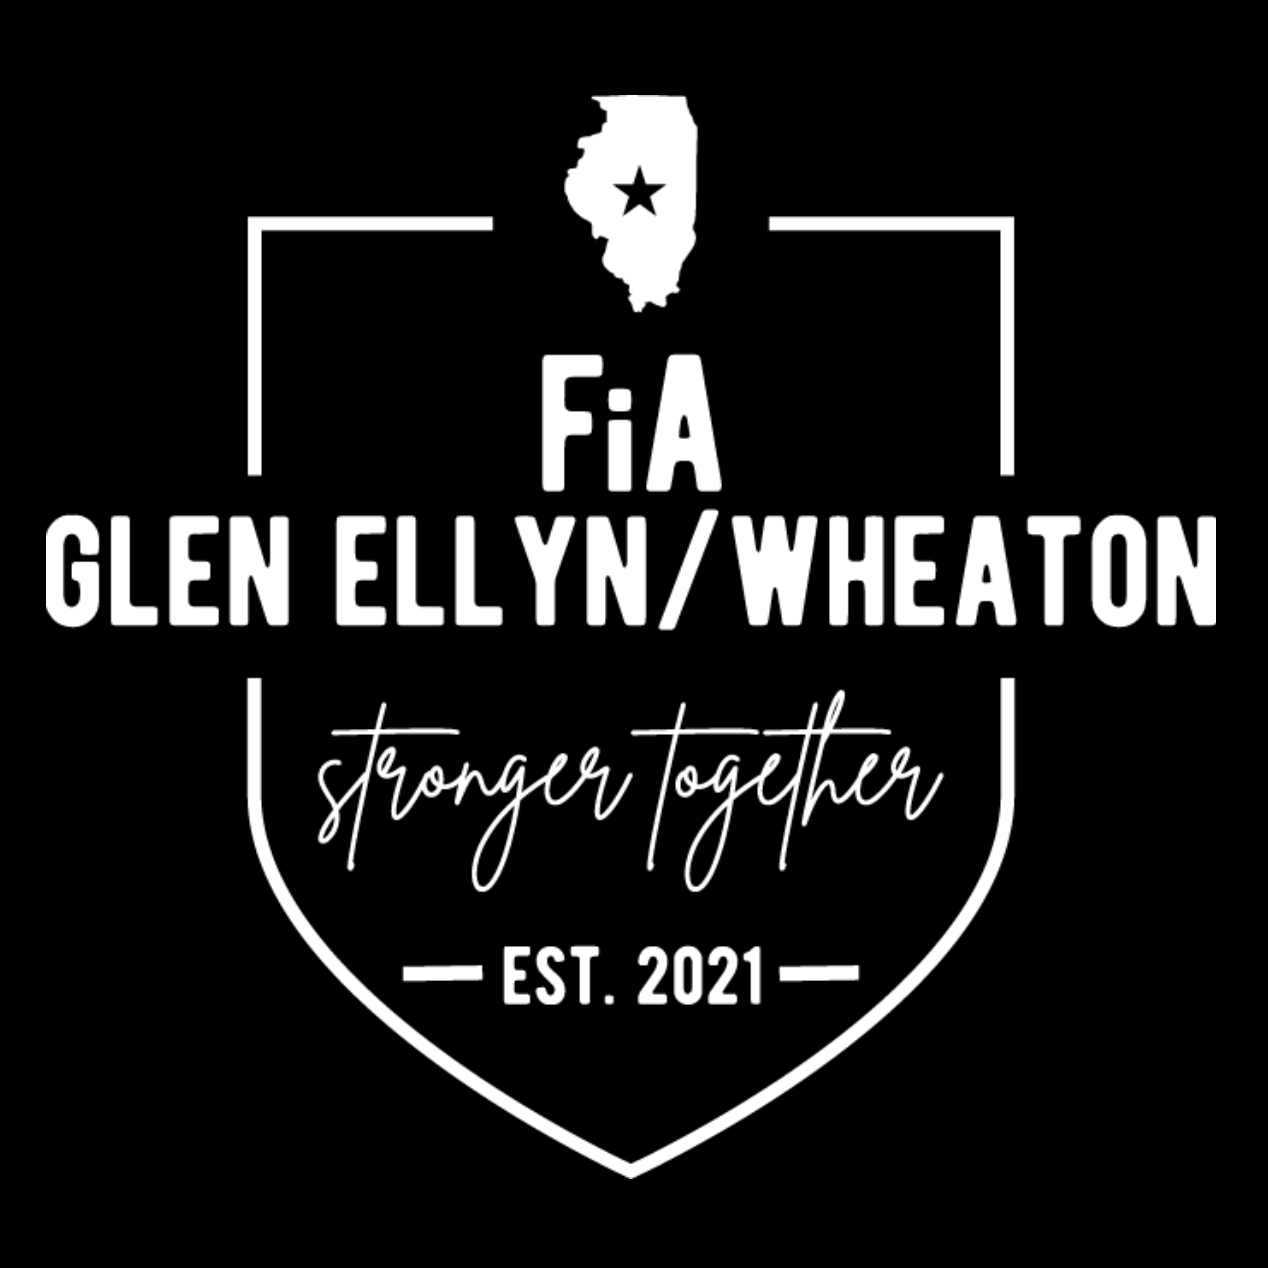 FiA Glen Ellyn Wheaton Pre-Order October 2023